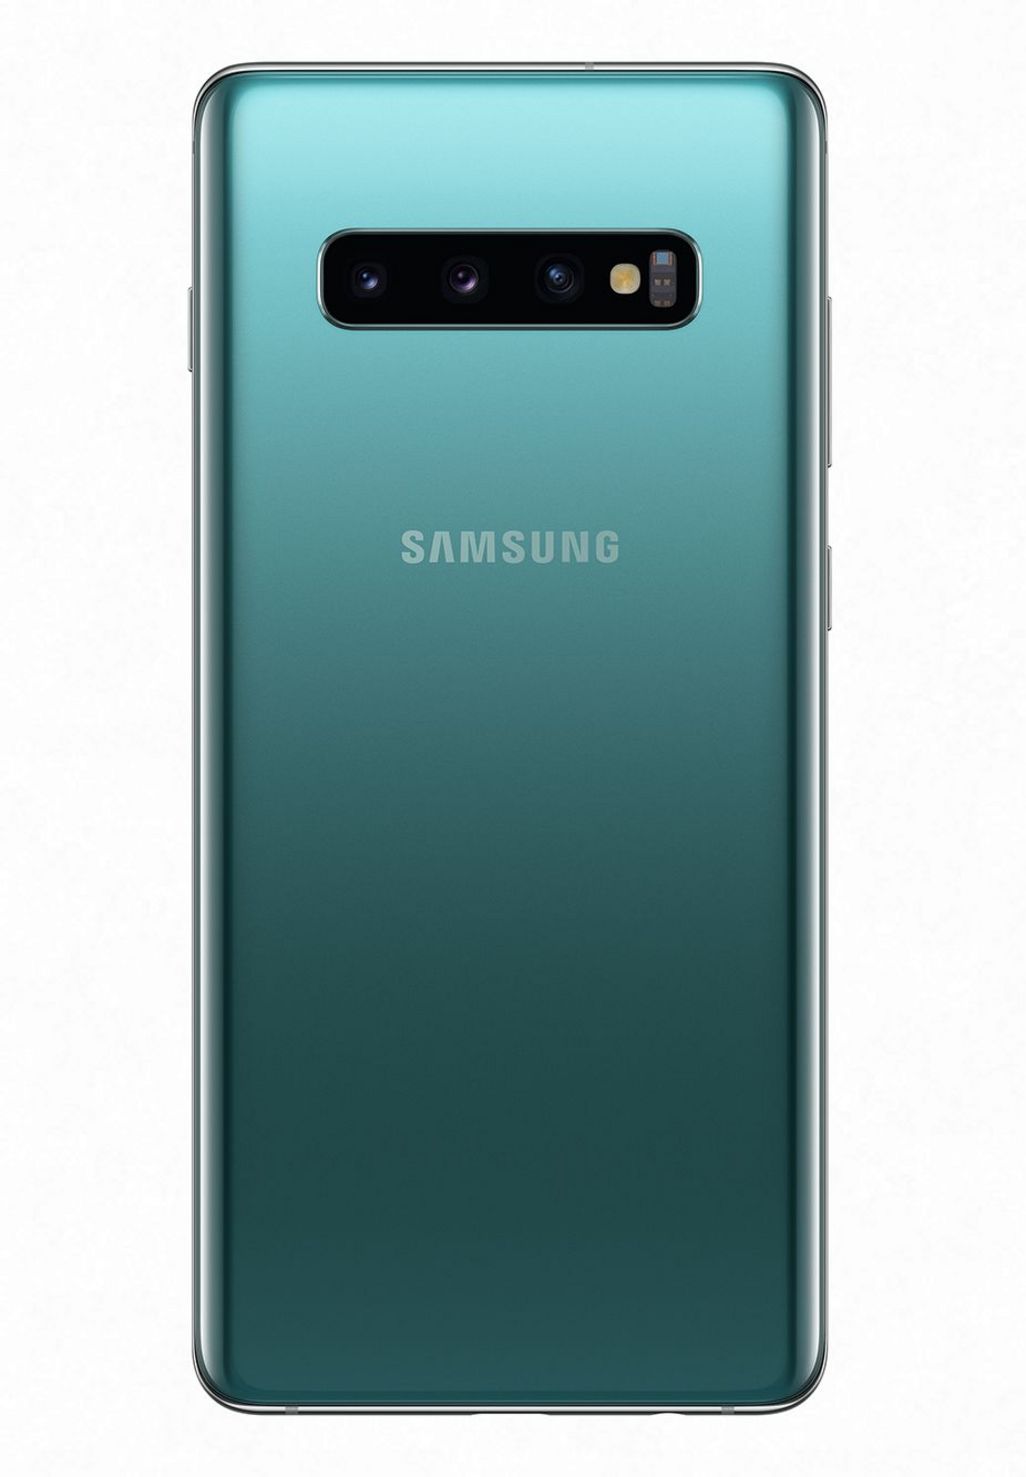 Das Samsung Galaxy S10+“ in „Prism Green“.